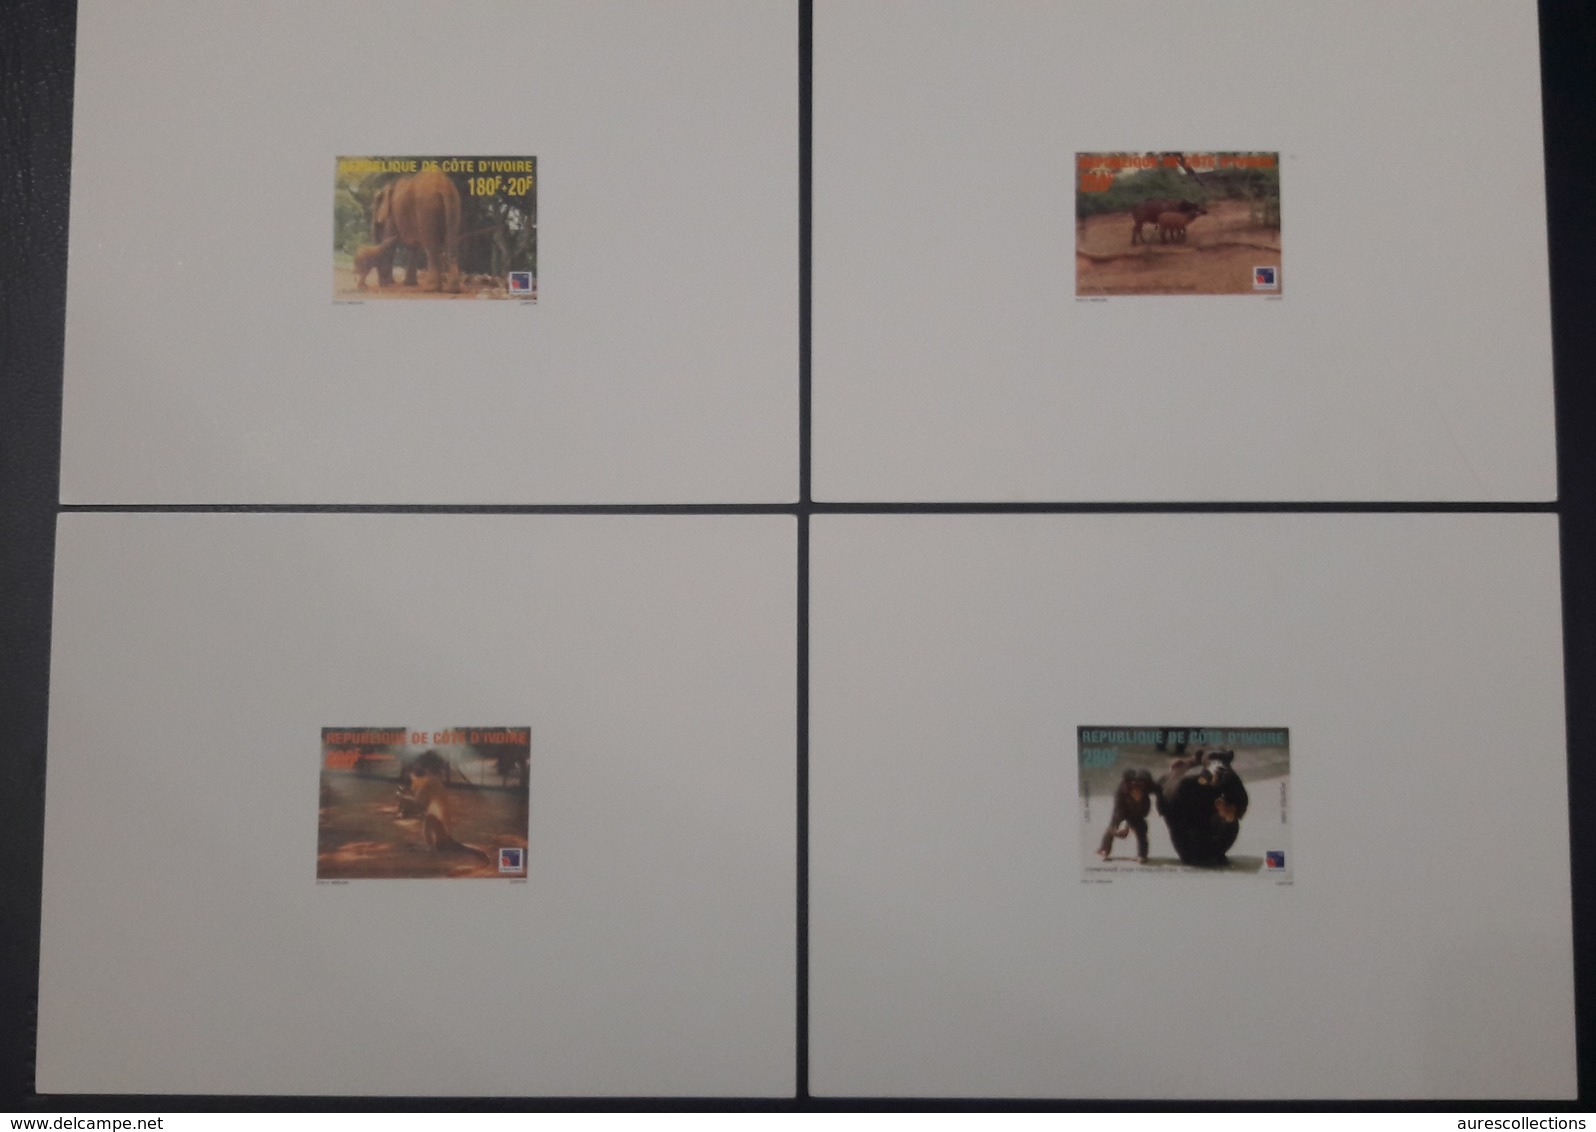 COTE D'IVOIRE IVORY COAST 1999 - DELUXE PROOF EPREUVE - ANIMALS APES MONKEYS SINGES ELEPHANTS PHILEXAFRIQUE CHIMPANZE - Chimpancés